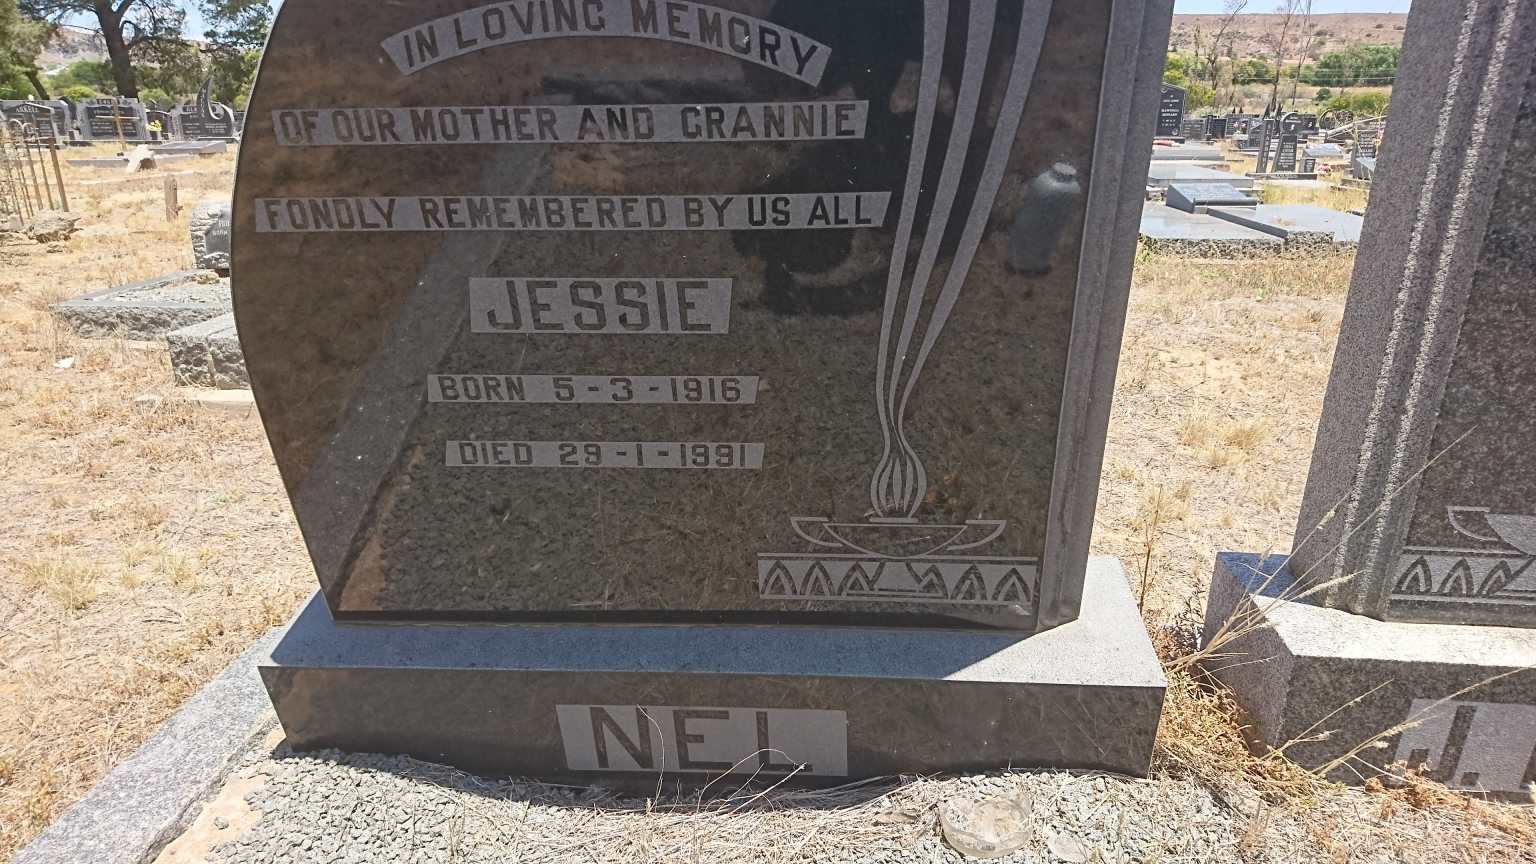 NEL Jessie 1916-1991